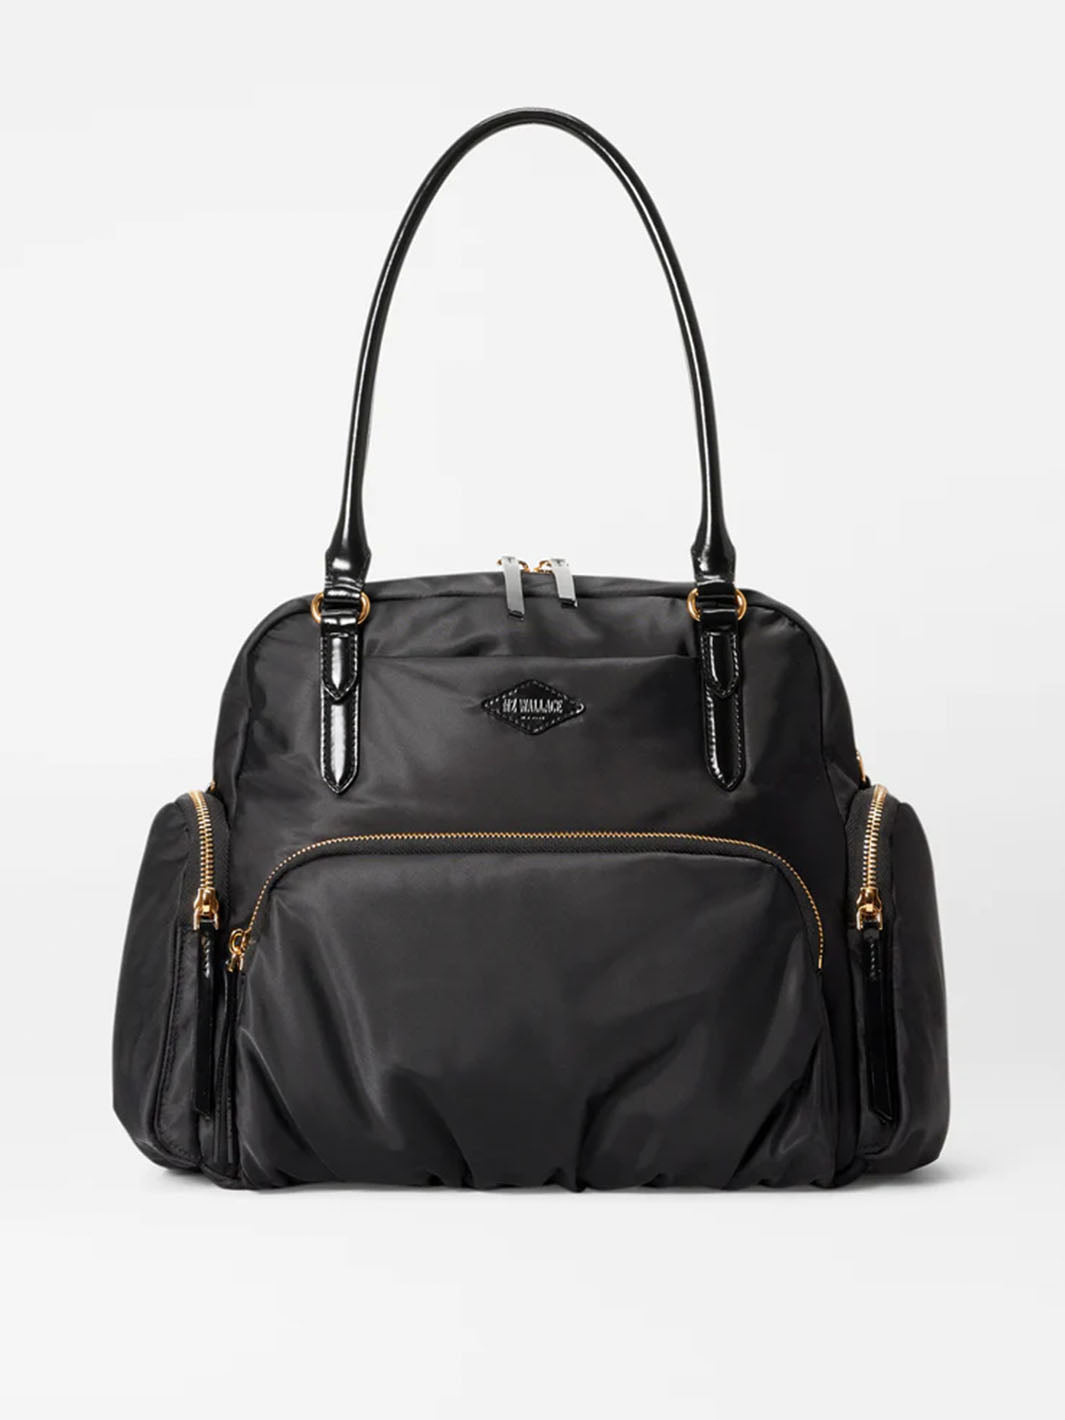 Chelsea Shoulder Bag in Black